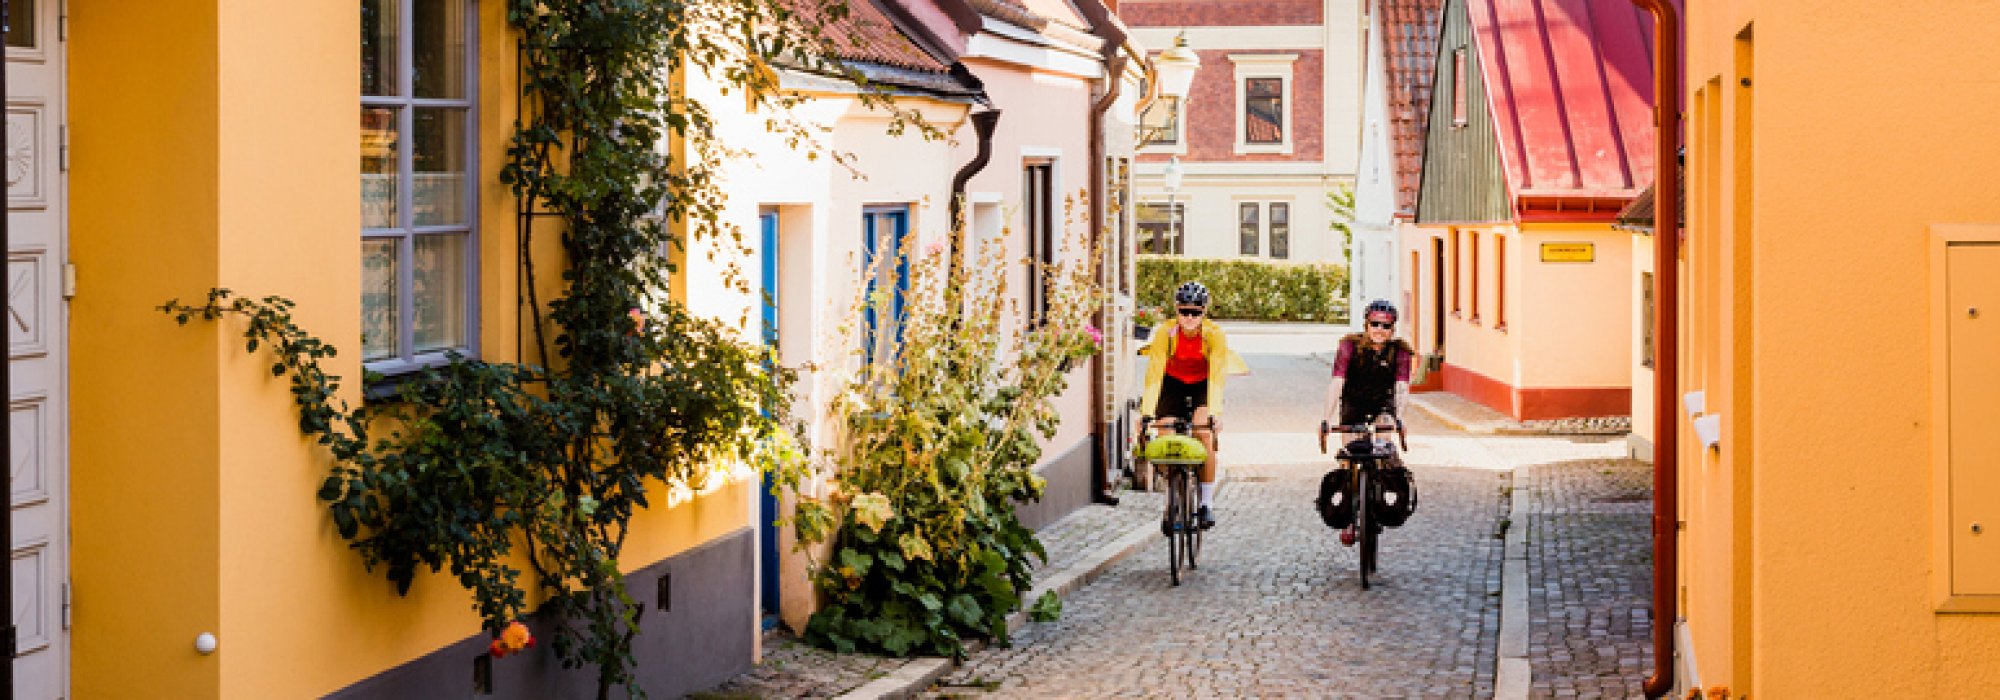 Cykelturister på kullerstensgata i Ystad. Foto.